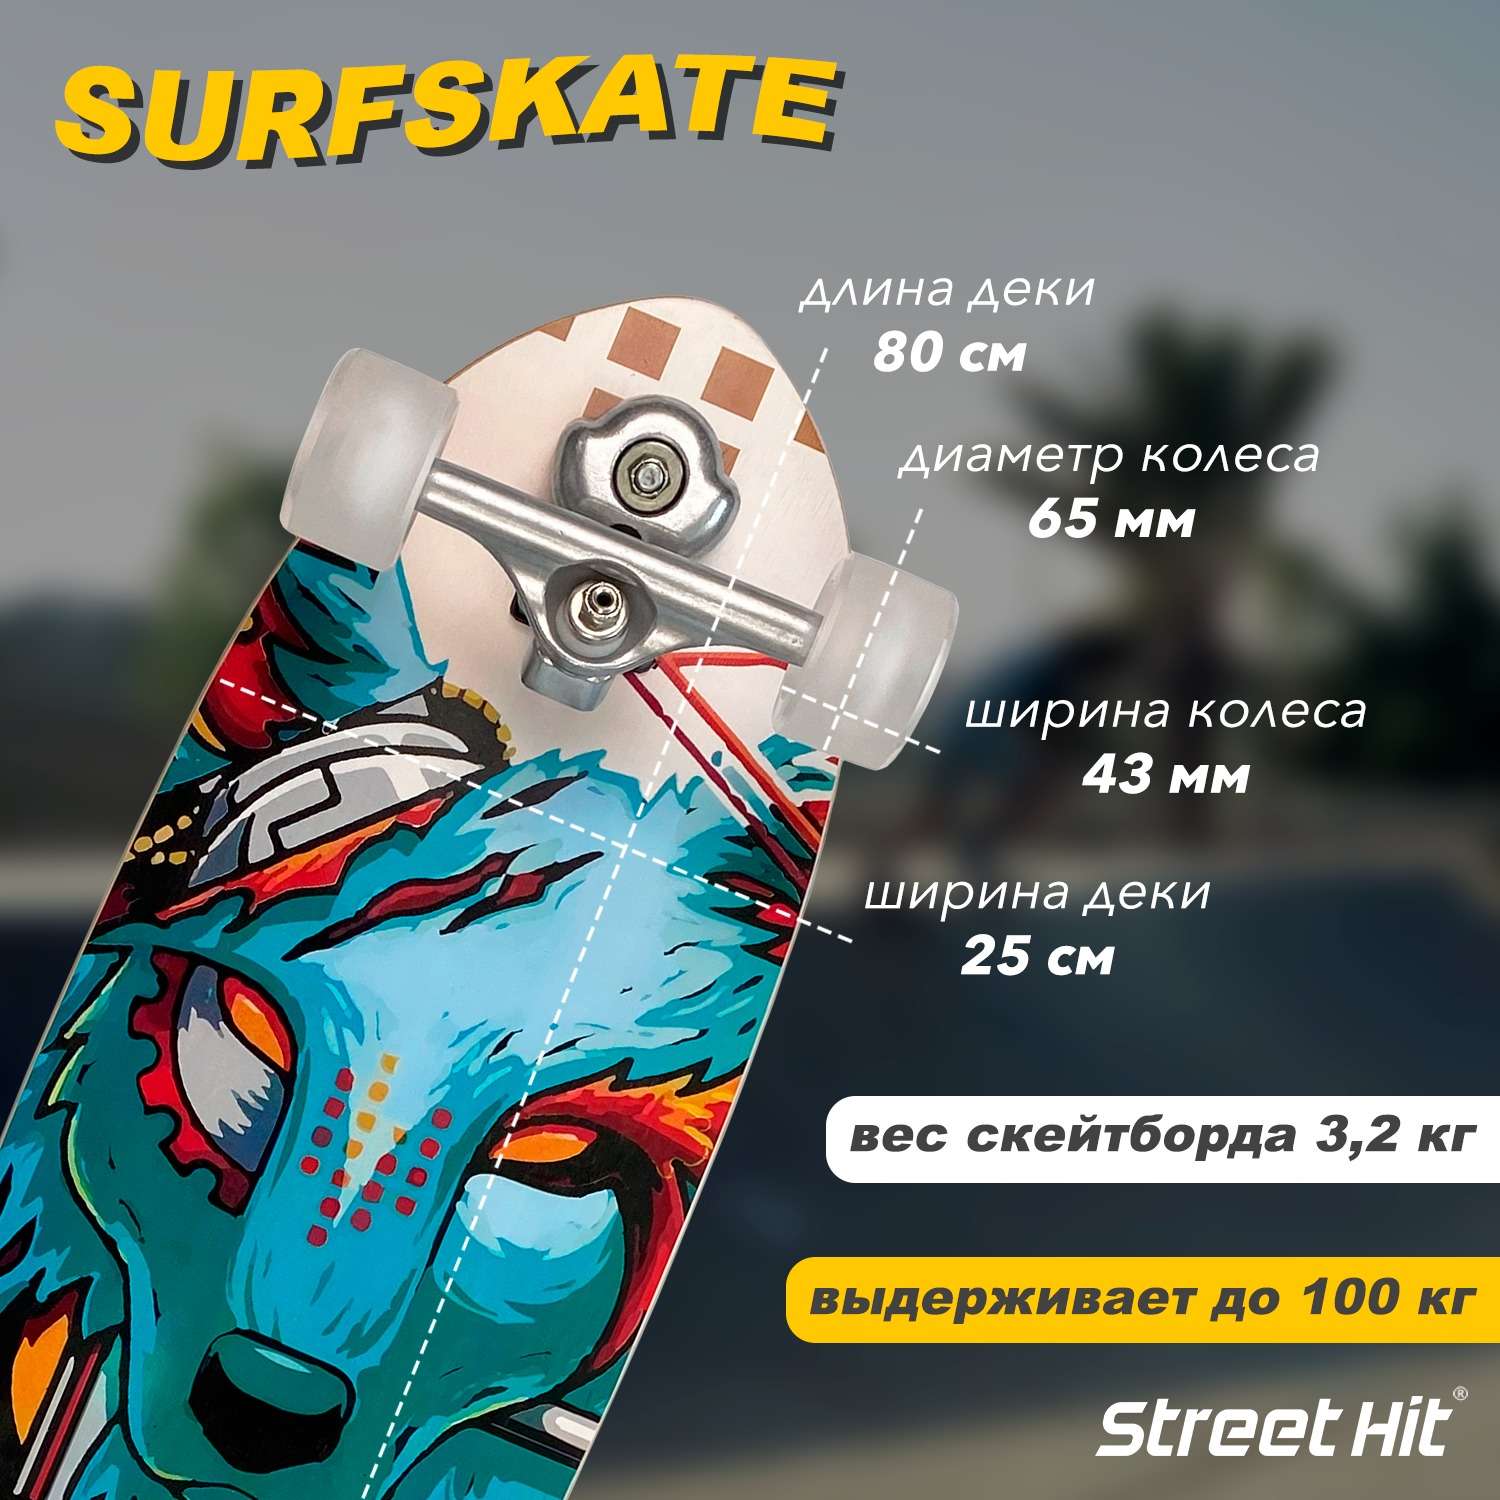 Скейтборд Street Hit деревянный SurfSkate CYBERFOX со светящимися колесами - фото 2